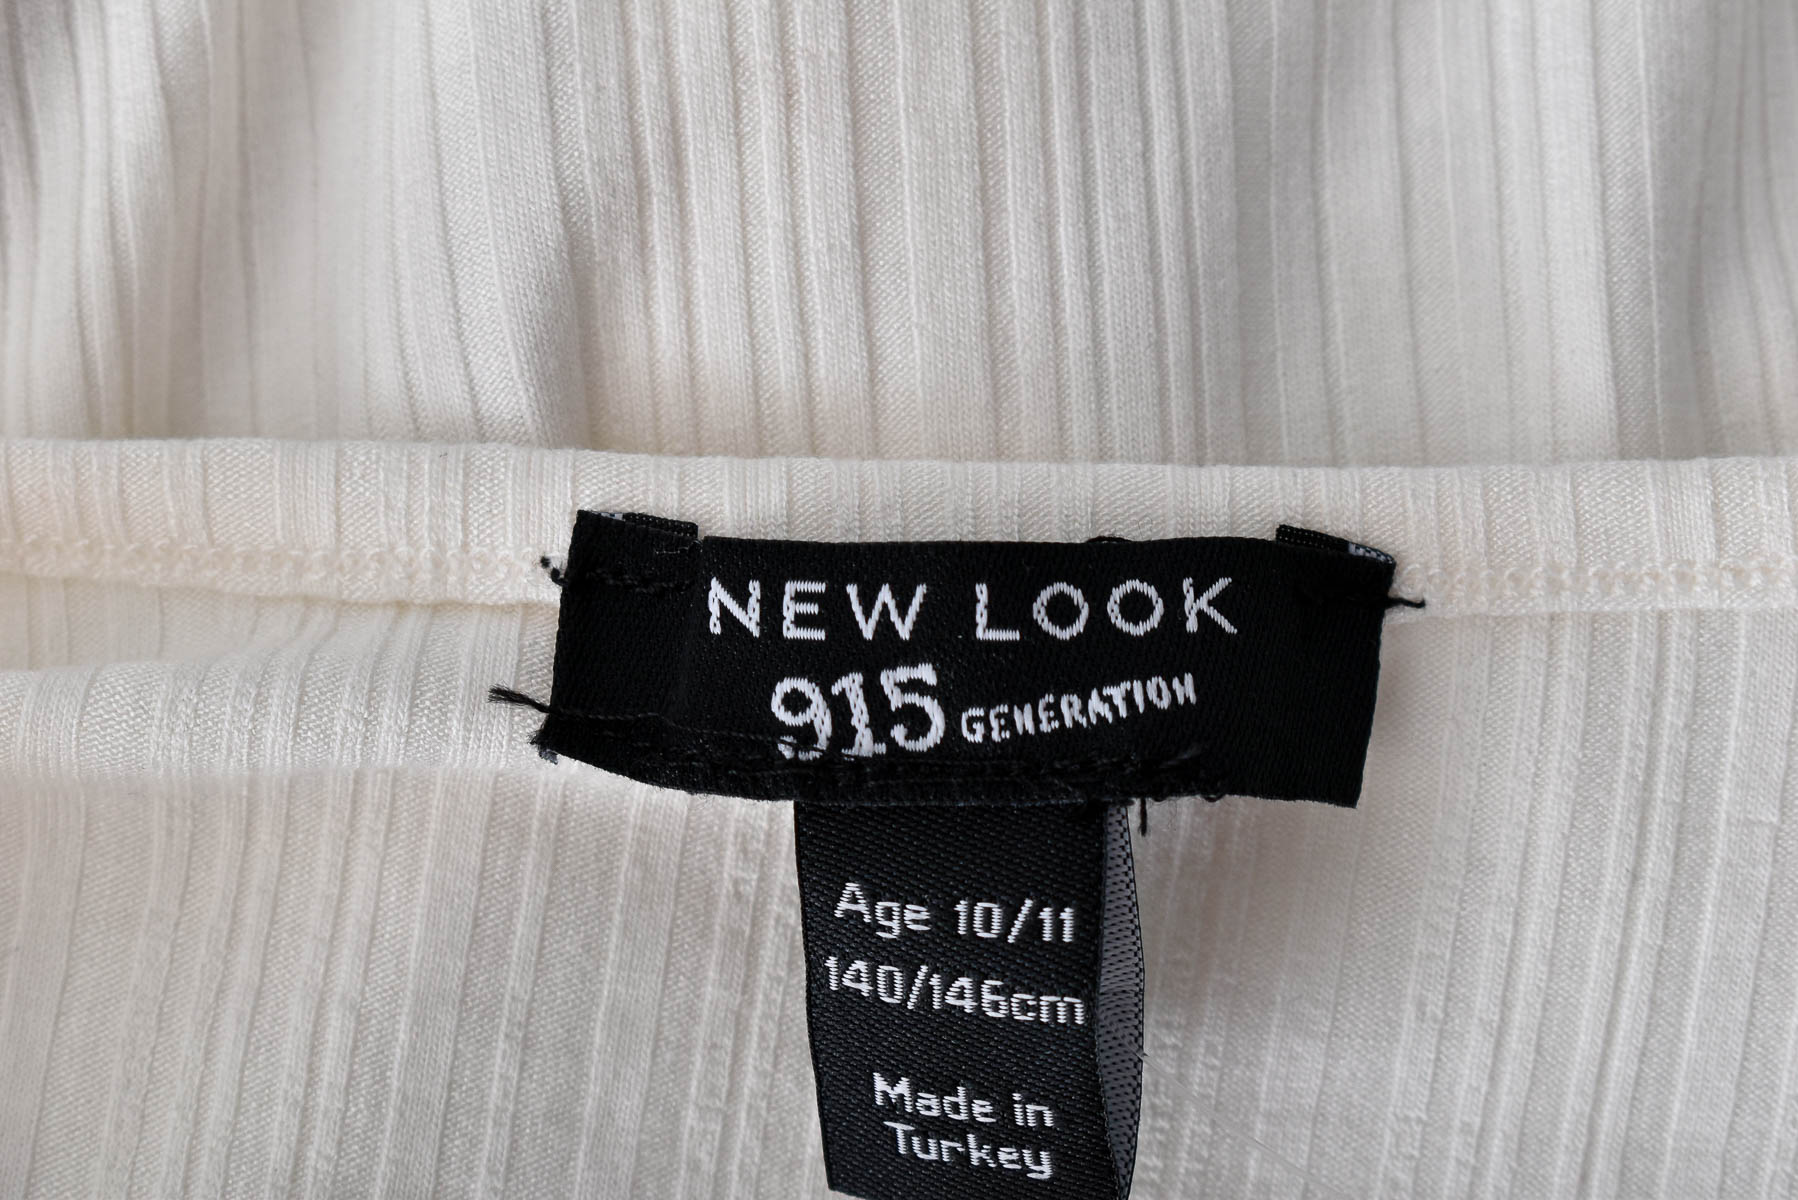 Koszulka dla dziewczynki - New Look 915 Generation - 2